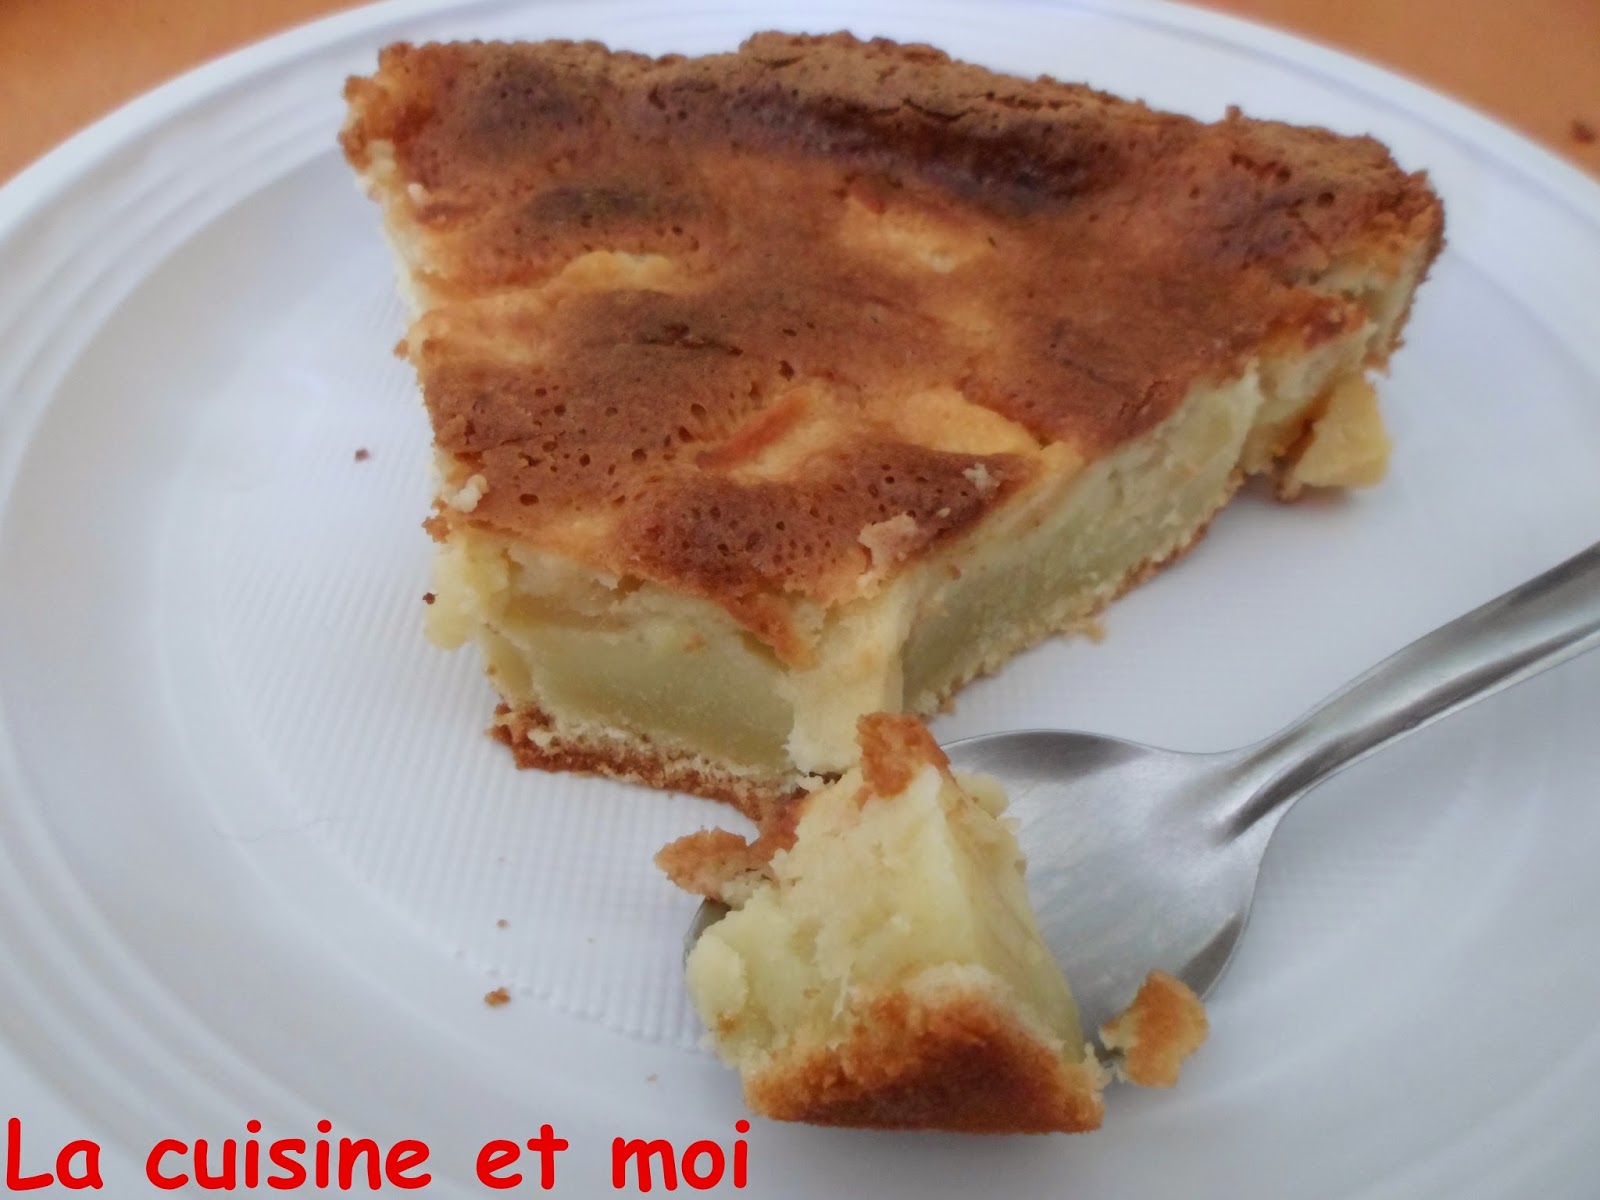 http://la-cuisine-et-moi.blogspot.fr/2014/05/gateau-aux-pommes.html